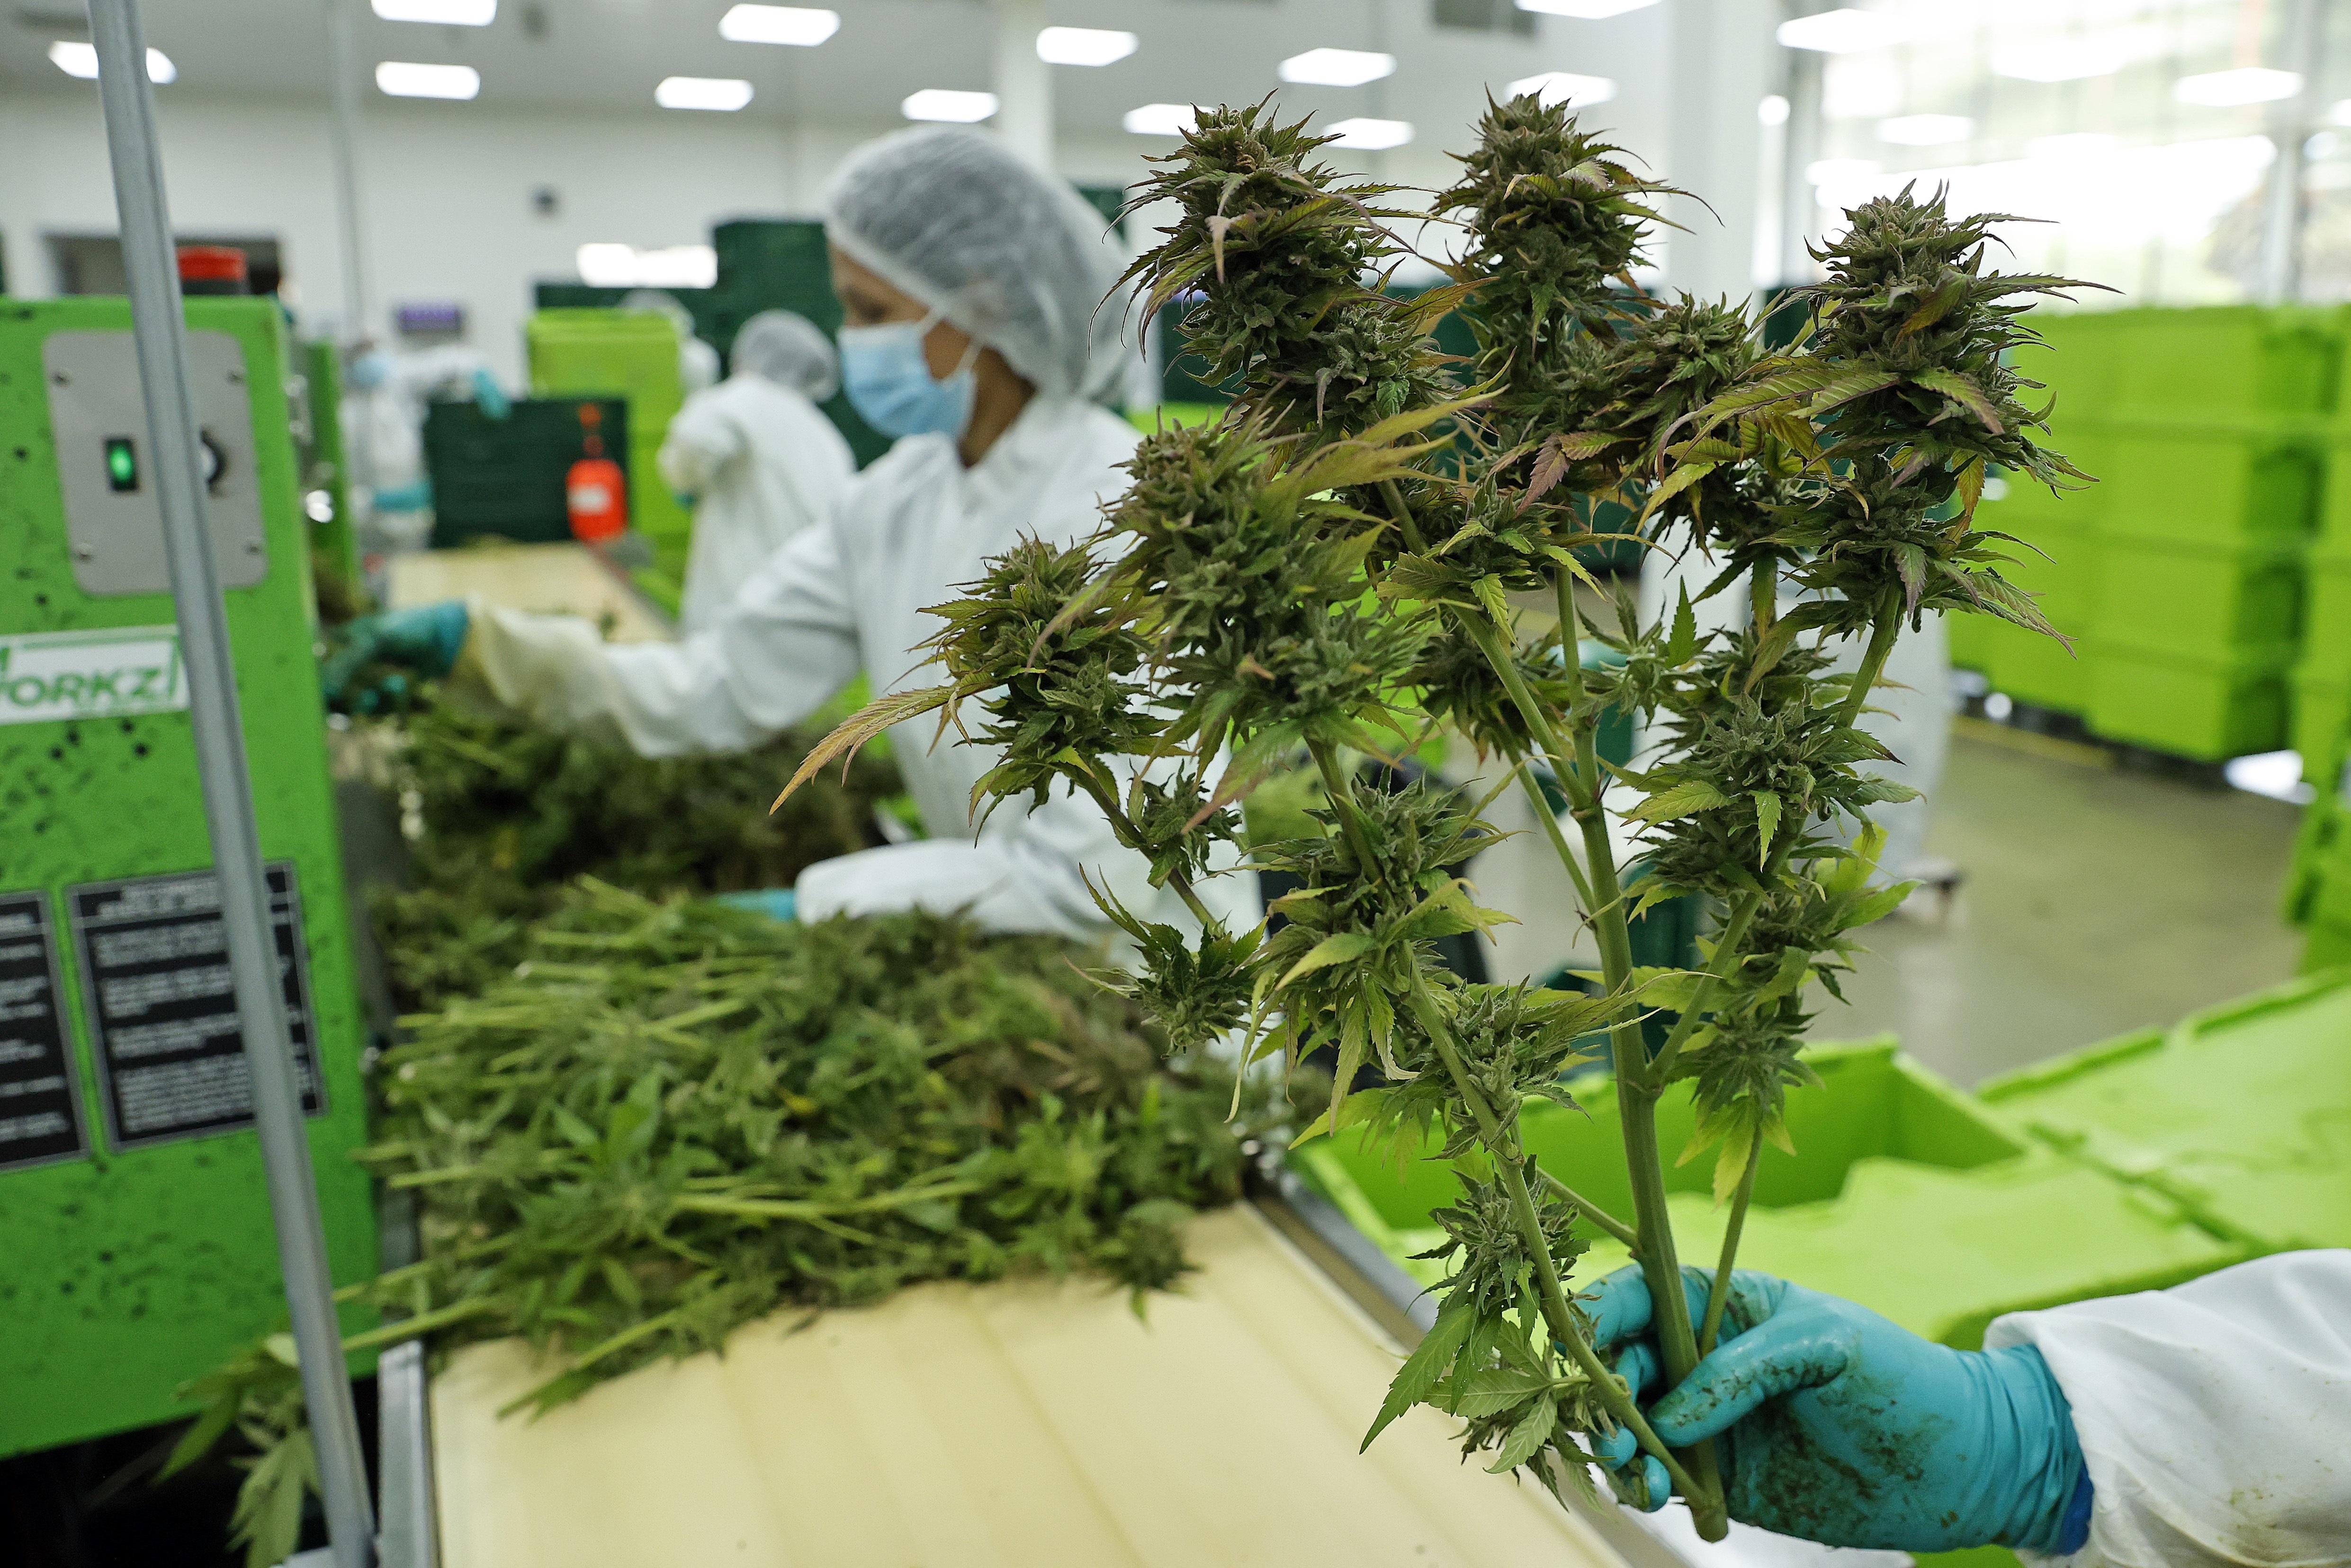 Los primeros pasos que se dieron desde 2017 en relación a la producción del cannabis en nuestro país han estado signados por una fuerte presencia del Estado como actor económico 